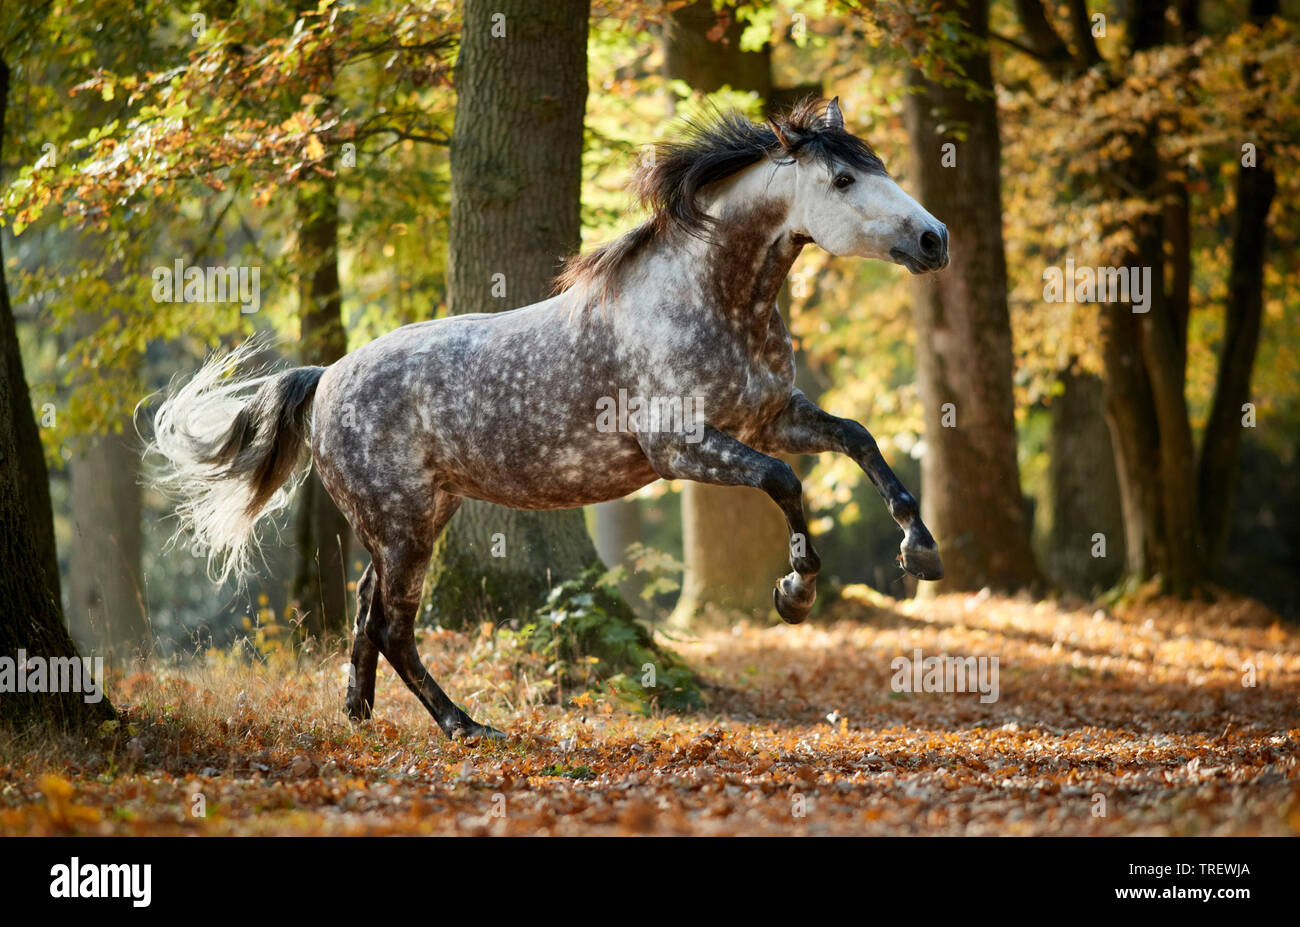 Reine Spanische Pferd, Andalusische. Dappled grau nach Übersicht - Weg in einem Wald im Herbst. Deutschland Stockfoto